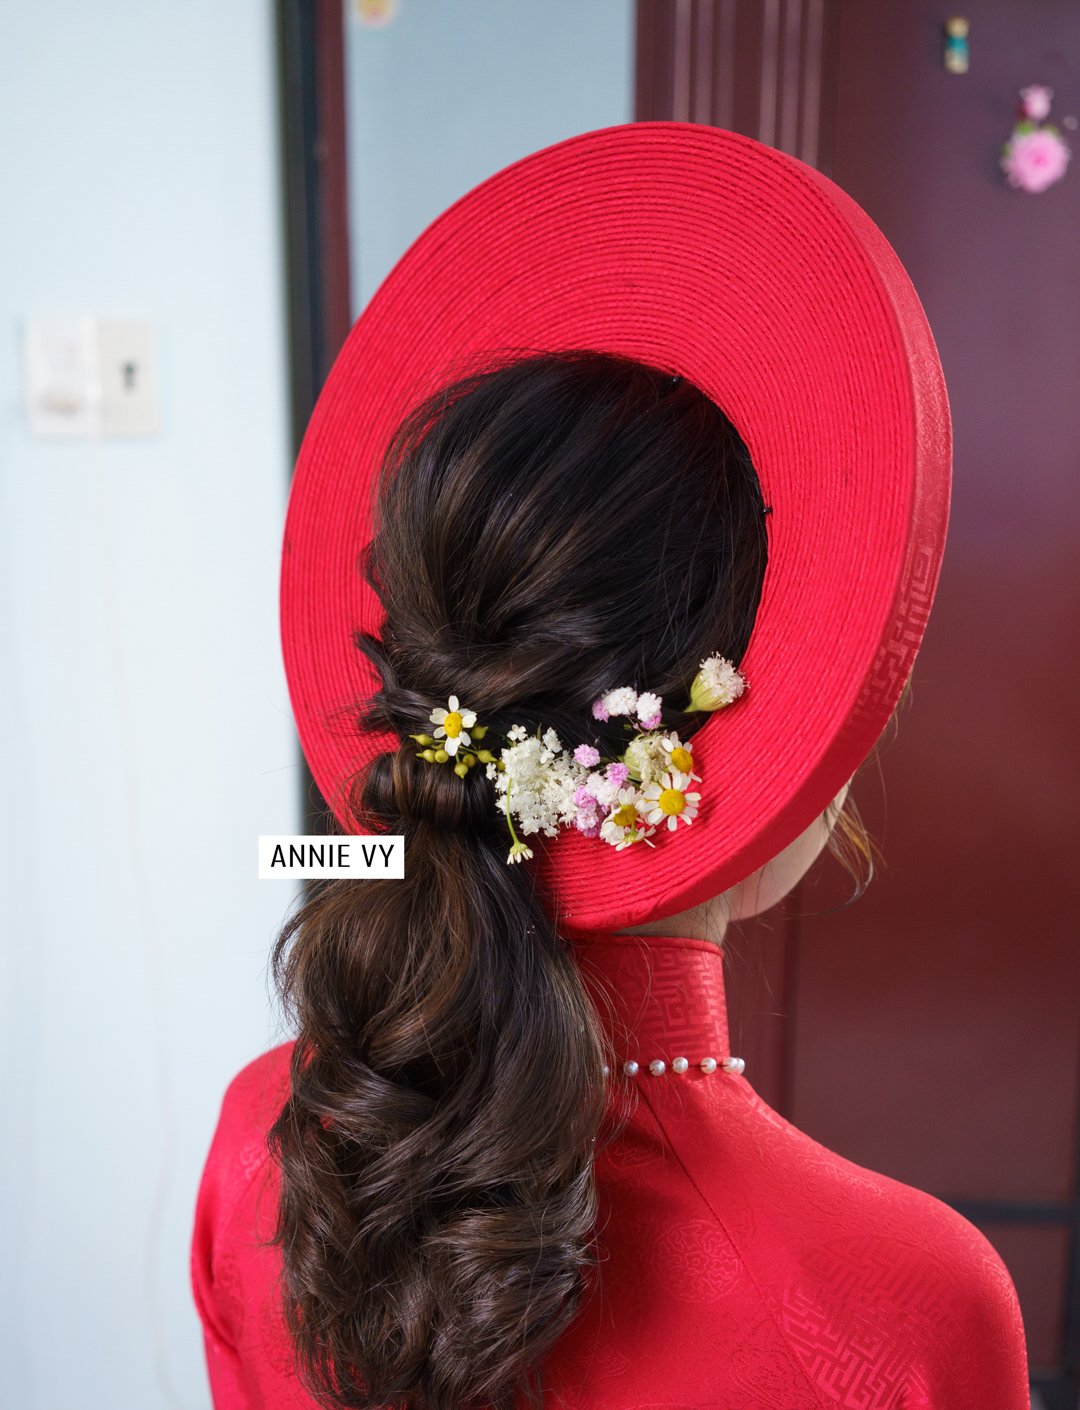 Hãy chiêm ngưỡng những mẫu tóc cô dâu với áo dài của Annie Vy Wedding mà bạn sẽ không thể cưỡng lại được. Những kiểu tóc này sẽ giúp bạn trở nên thật nổi bật và quý phái trong ngày trọng đại của mình.